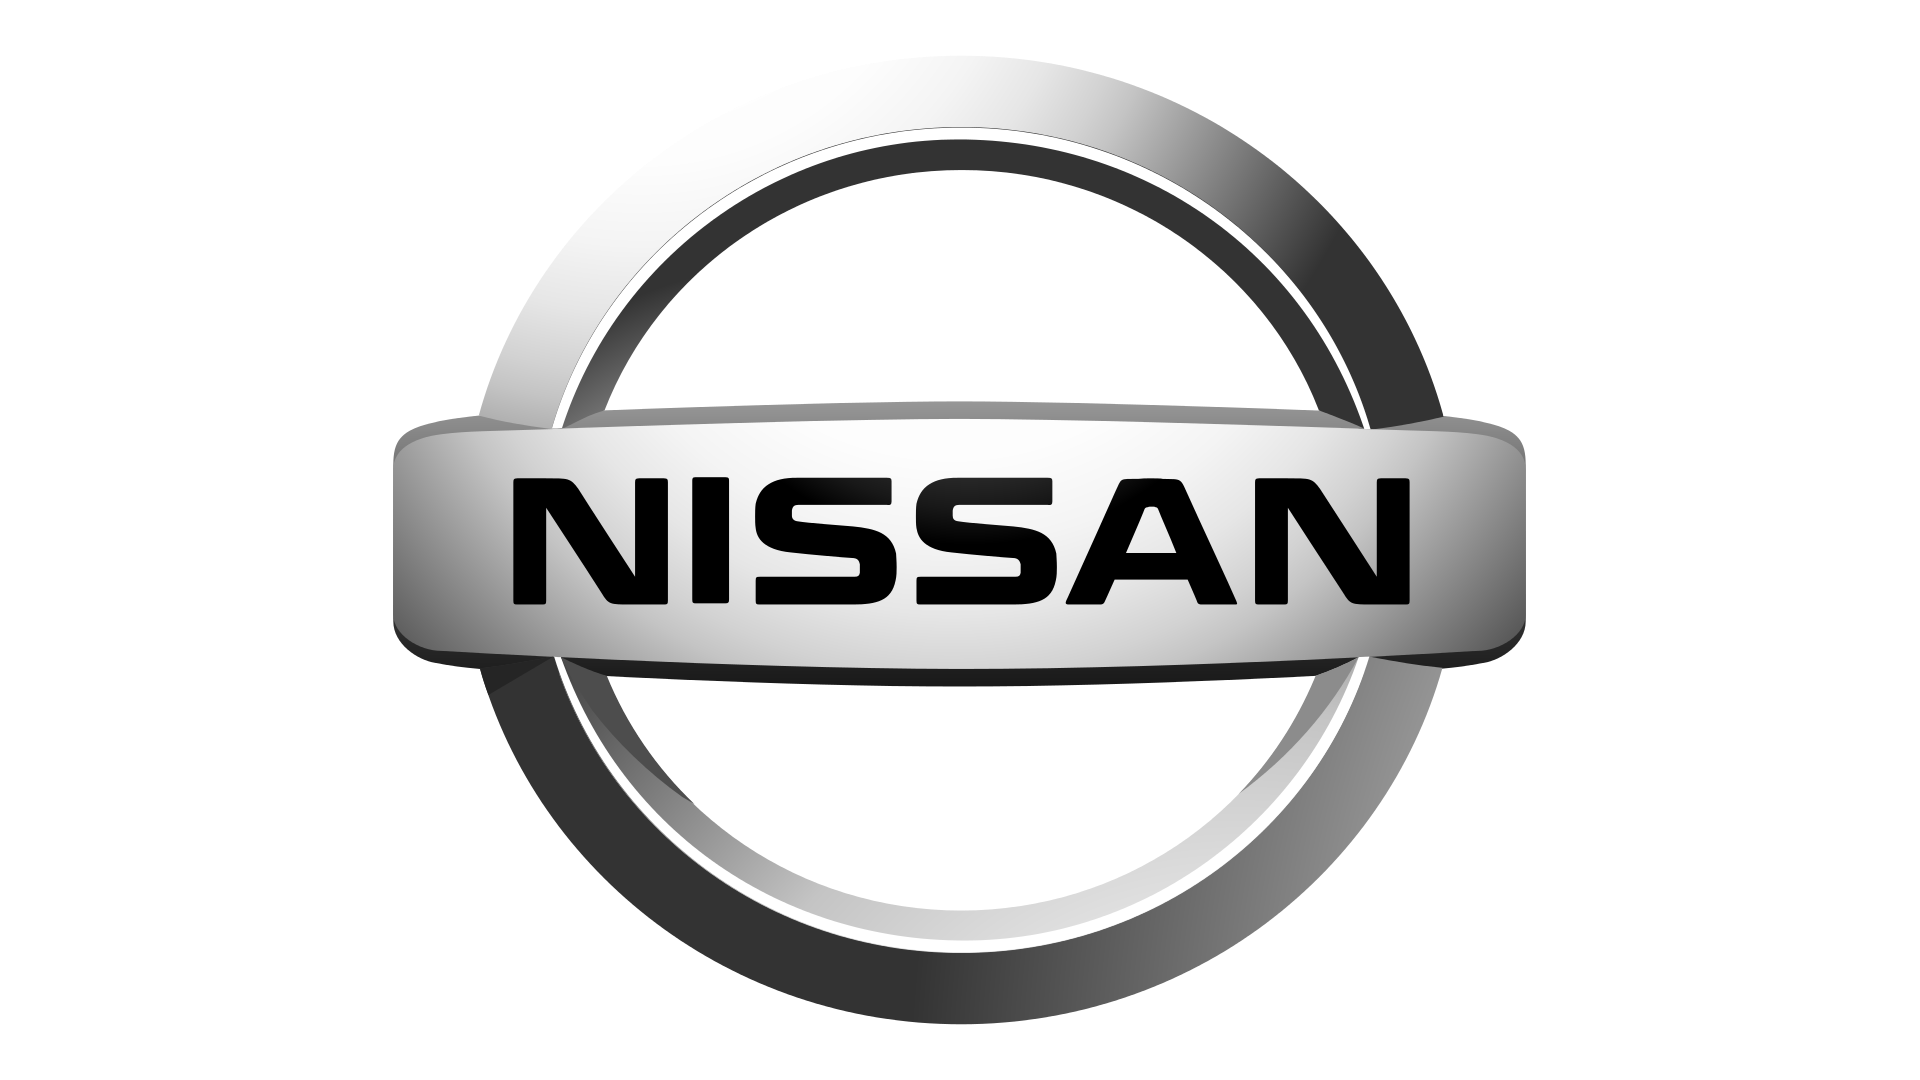 Download Free Png Nissan Logo